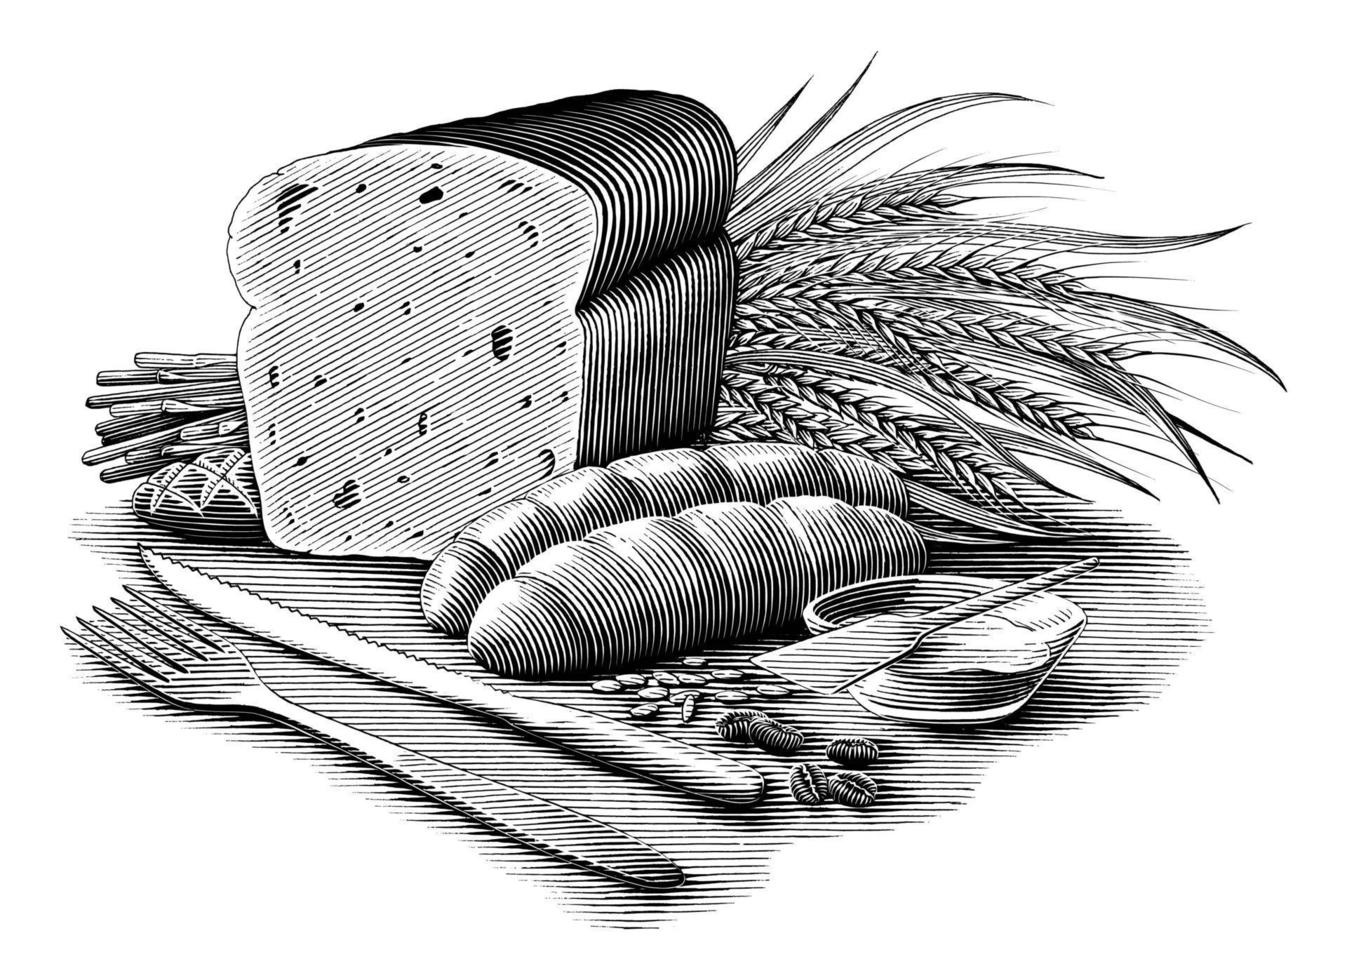 Schwarzweiss-Kunst der Brotsammlungsillustrations-Weinlesegravurart lokalisiert auf weißem Hintergrund vektor